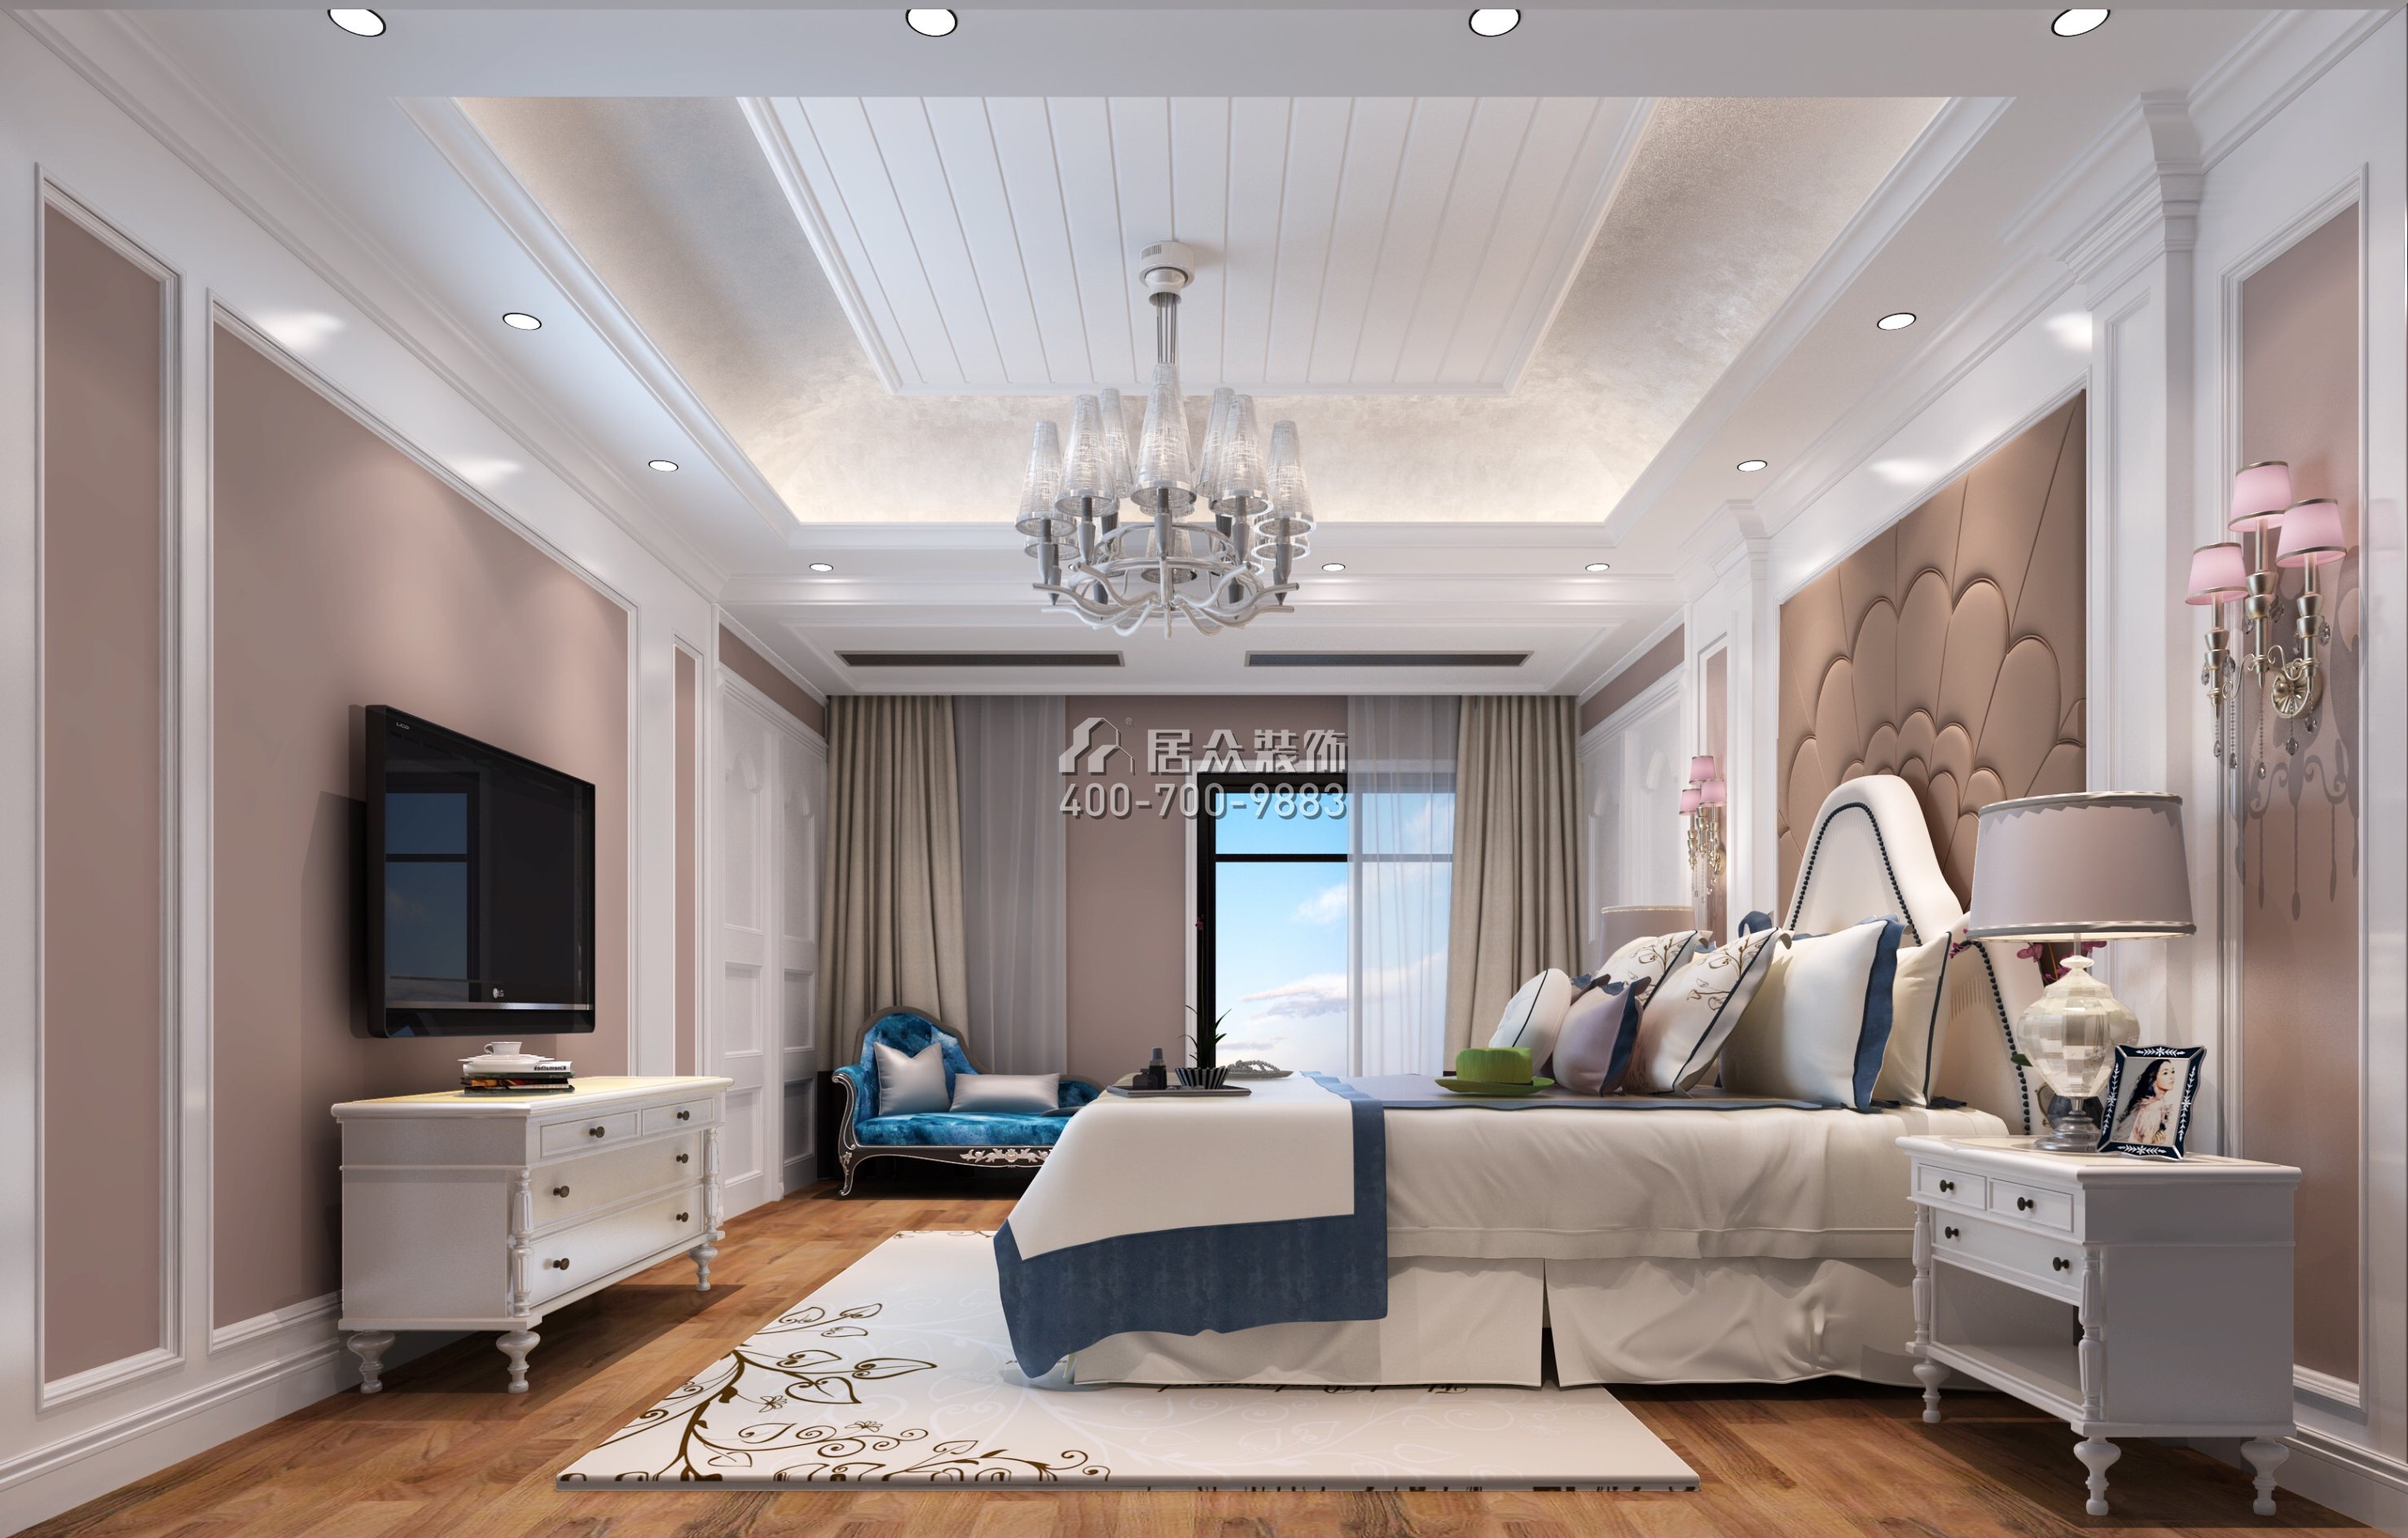 龙城一品300平方米欧式风格别墅户型卧室装修效果图